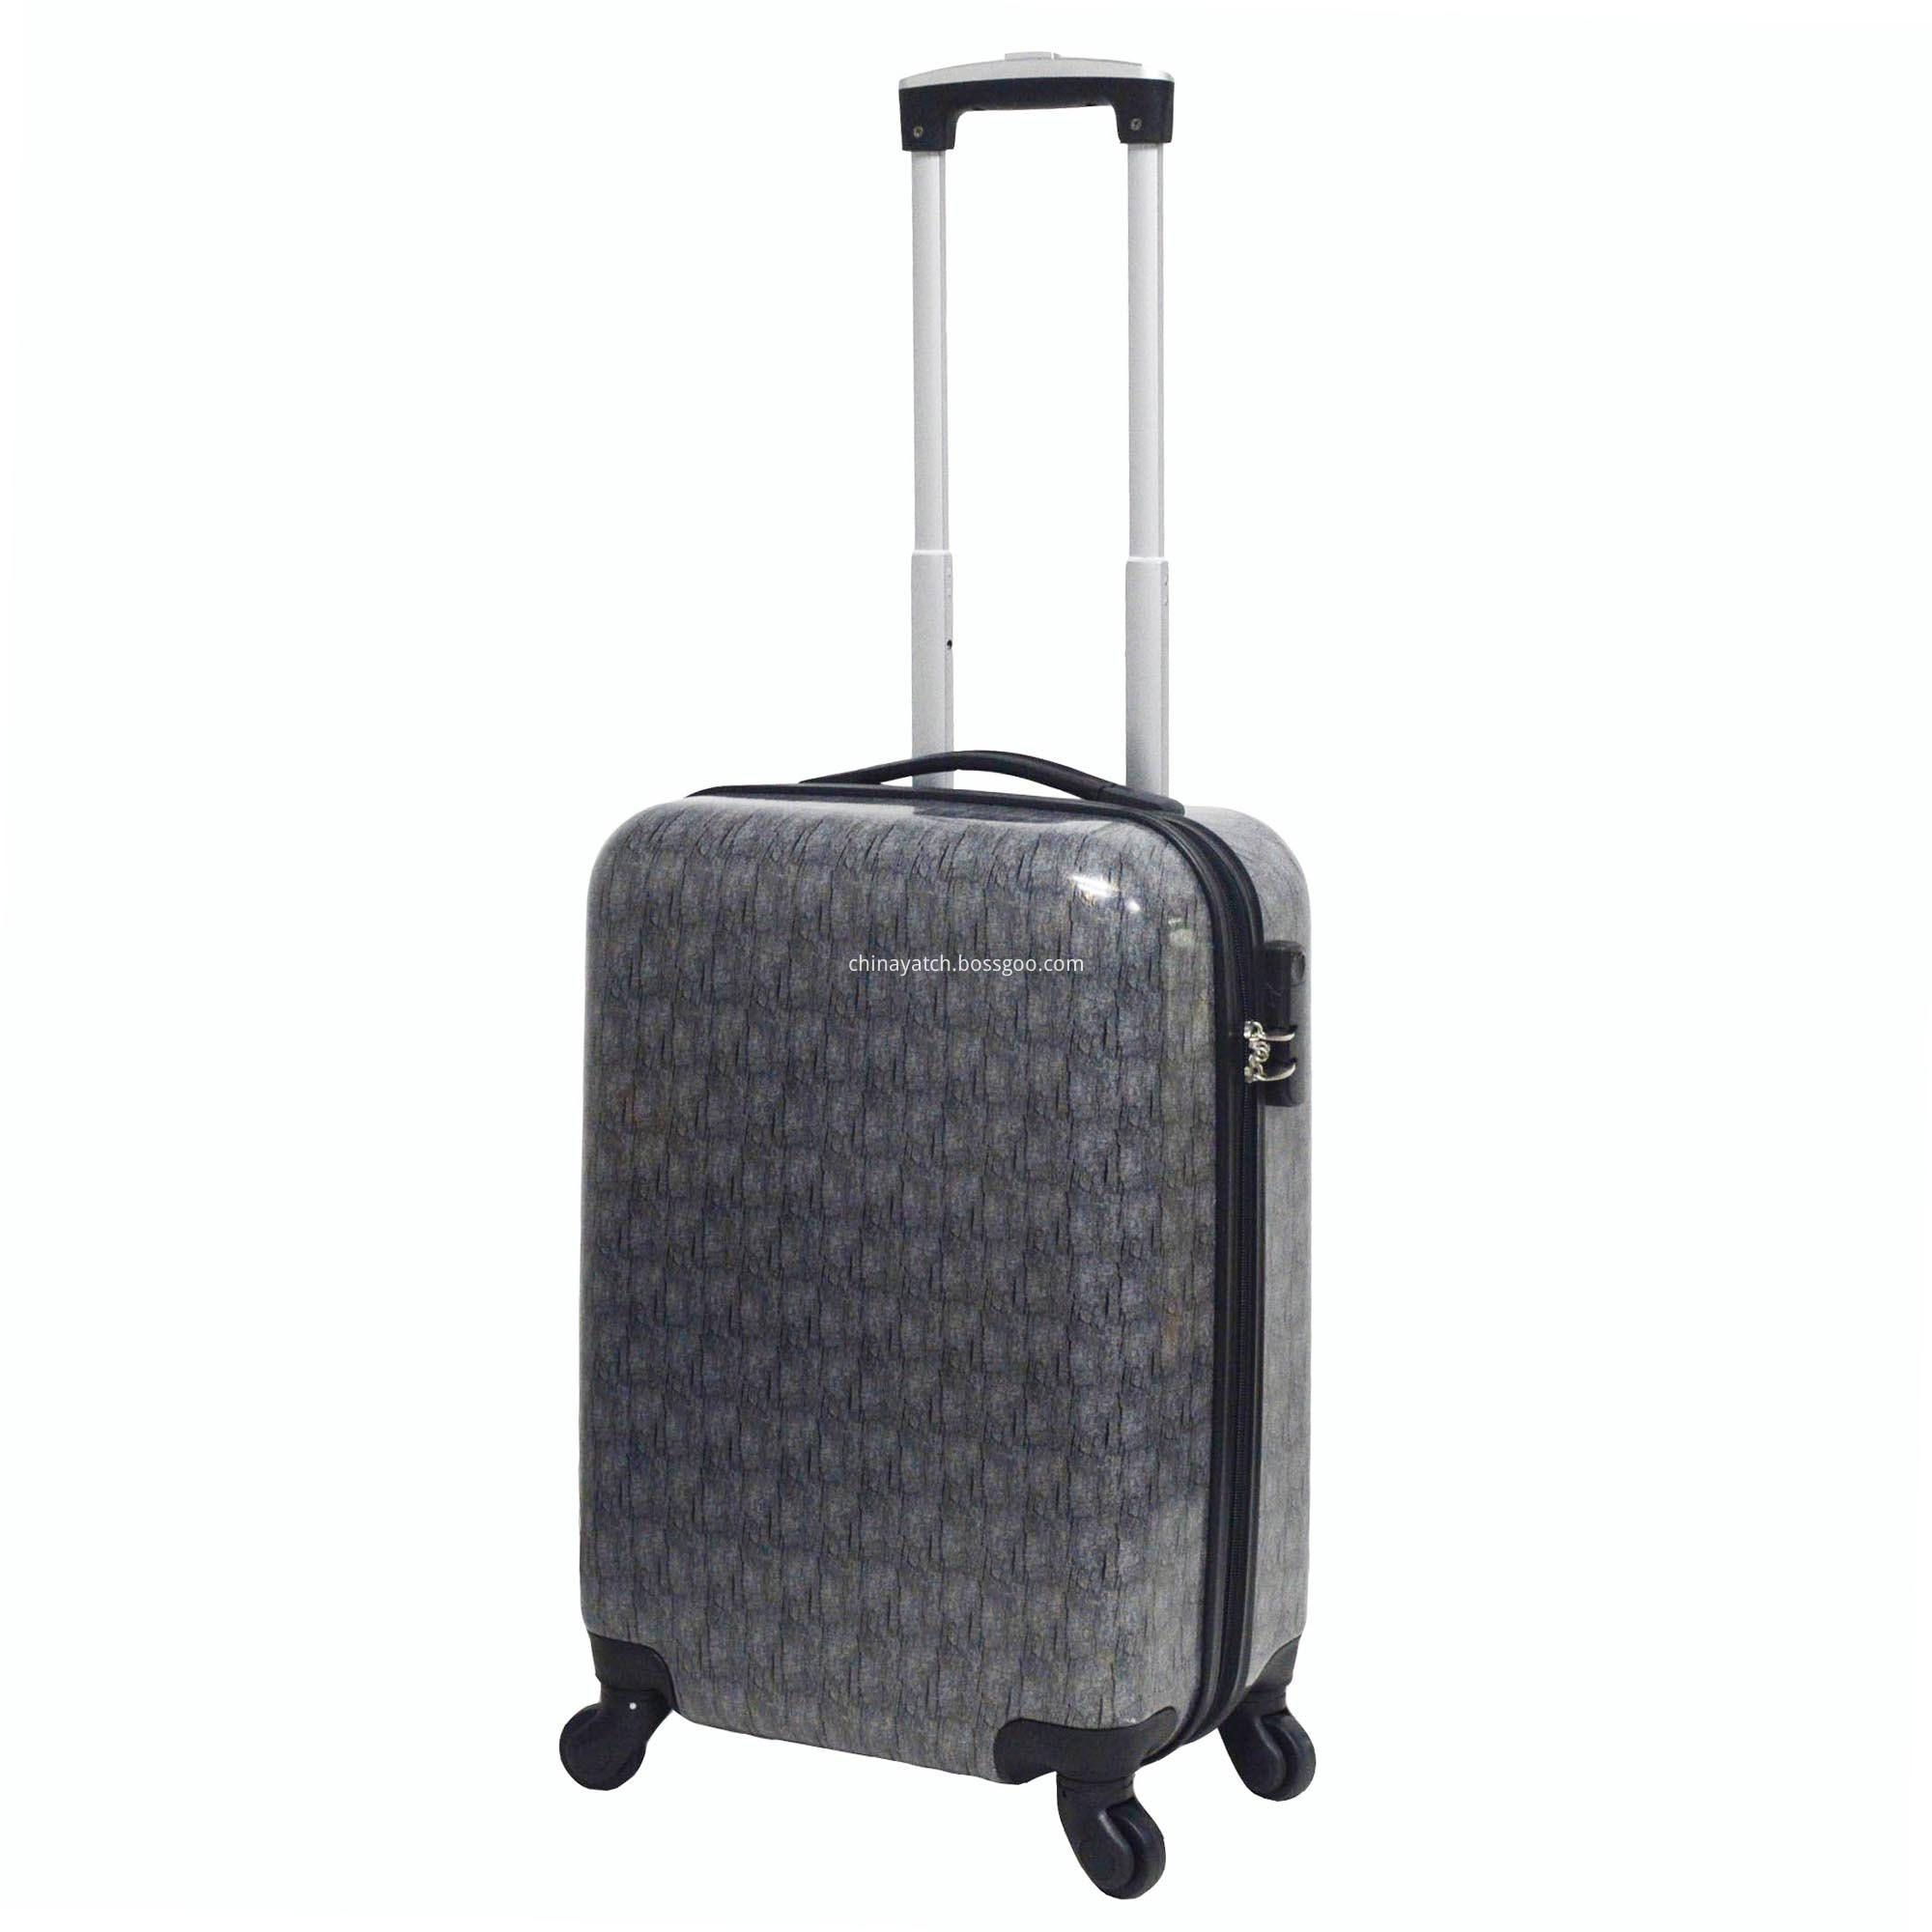 shiny pc hardside suitcase